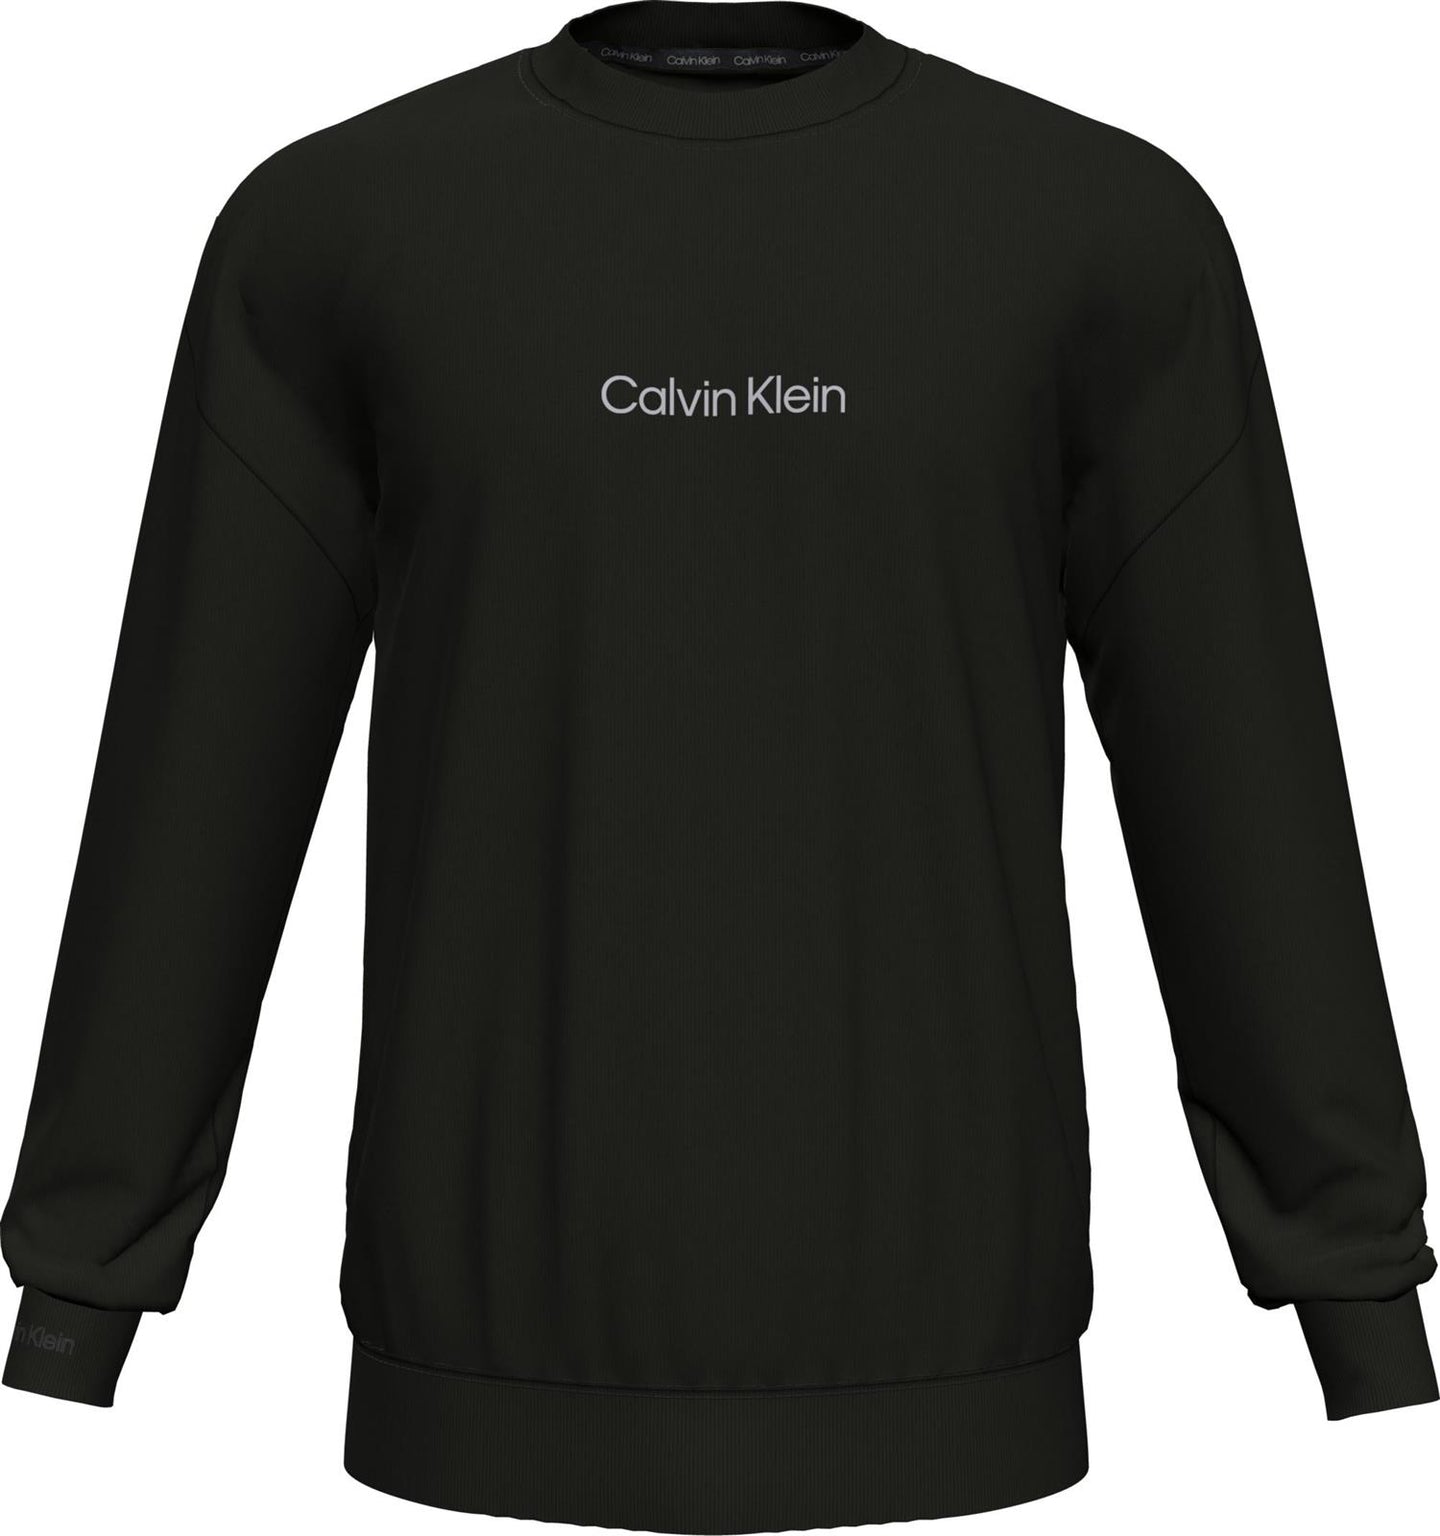 Clalvin Klein Sweatshirt